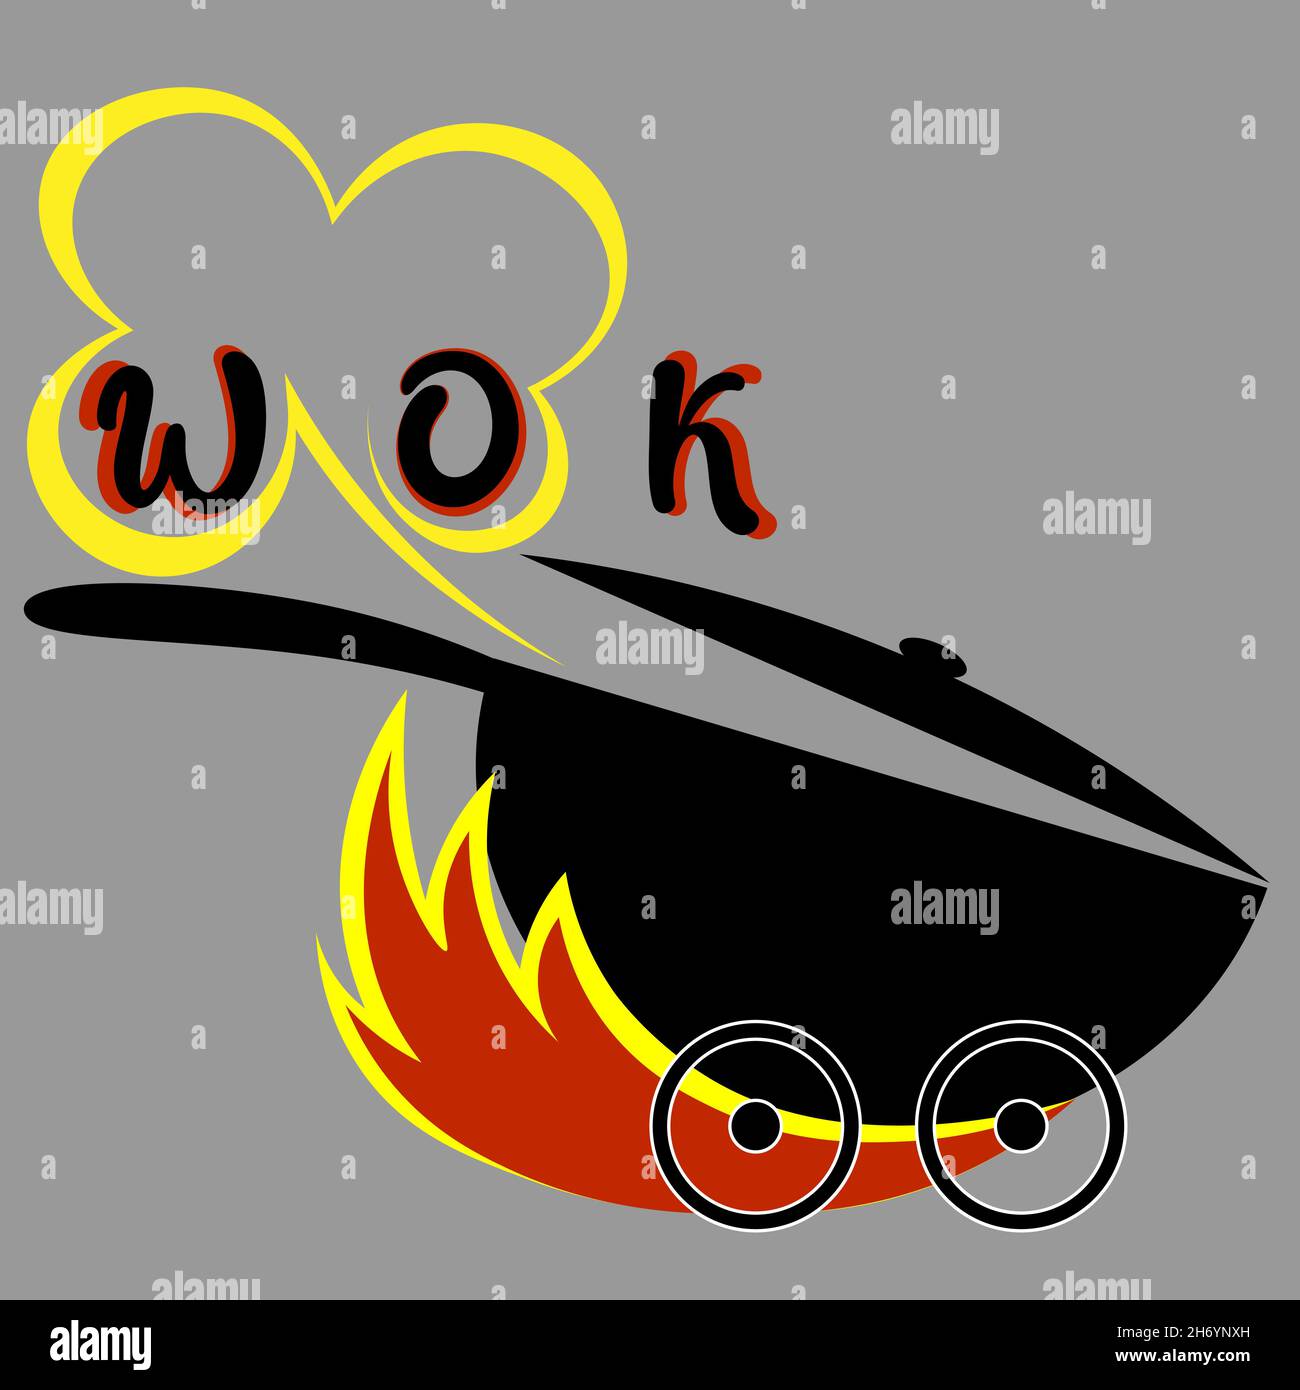 logo minimal de lettrage livraison de nourriture asiatique wok avec feu 1 Illustration de Vecteur